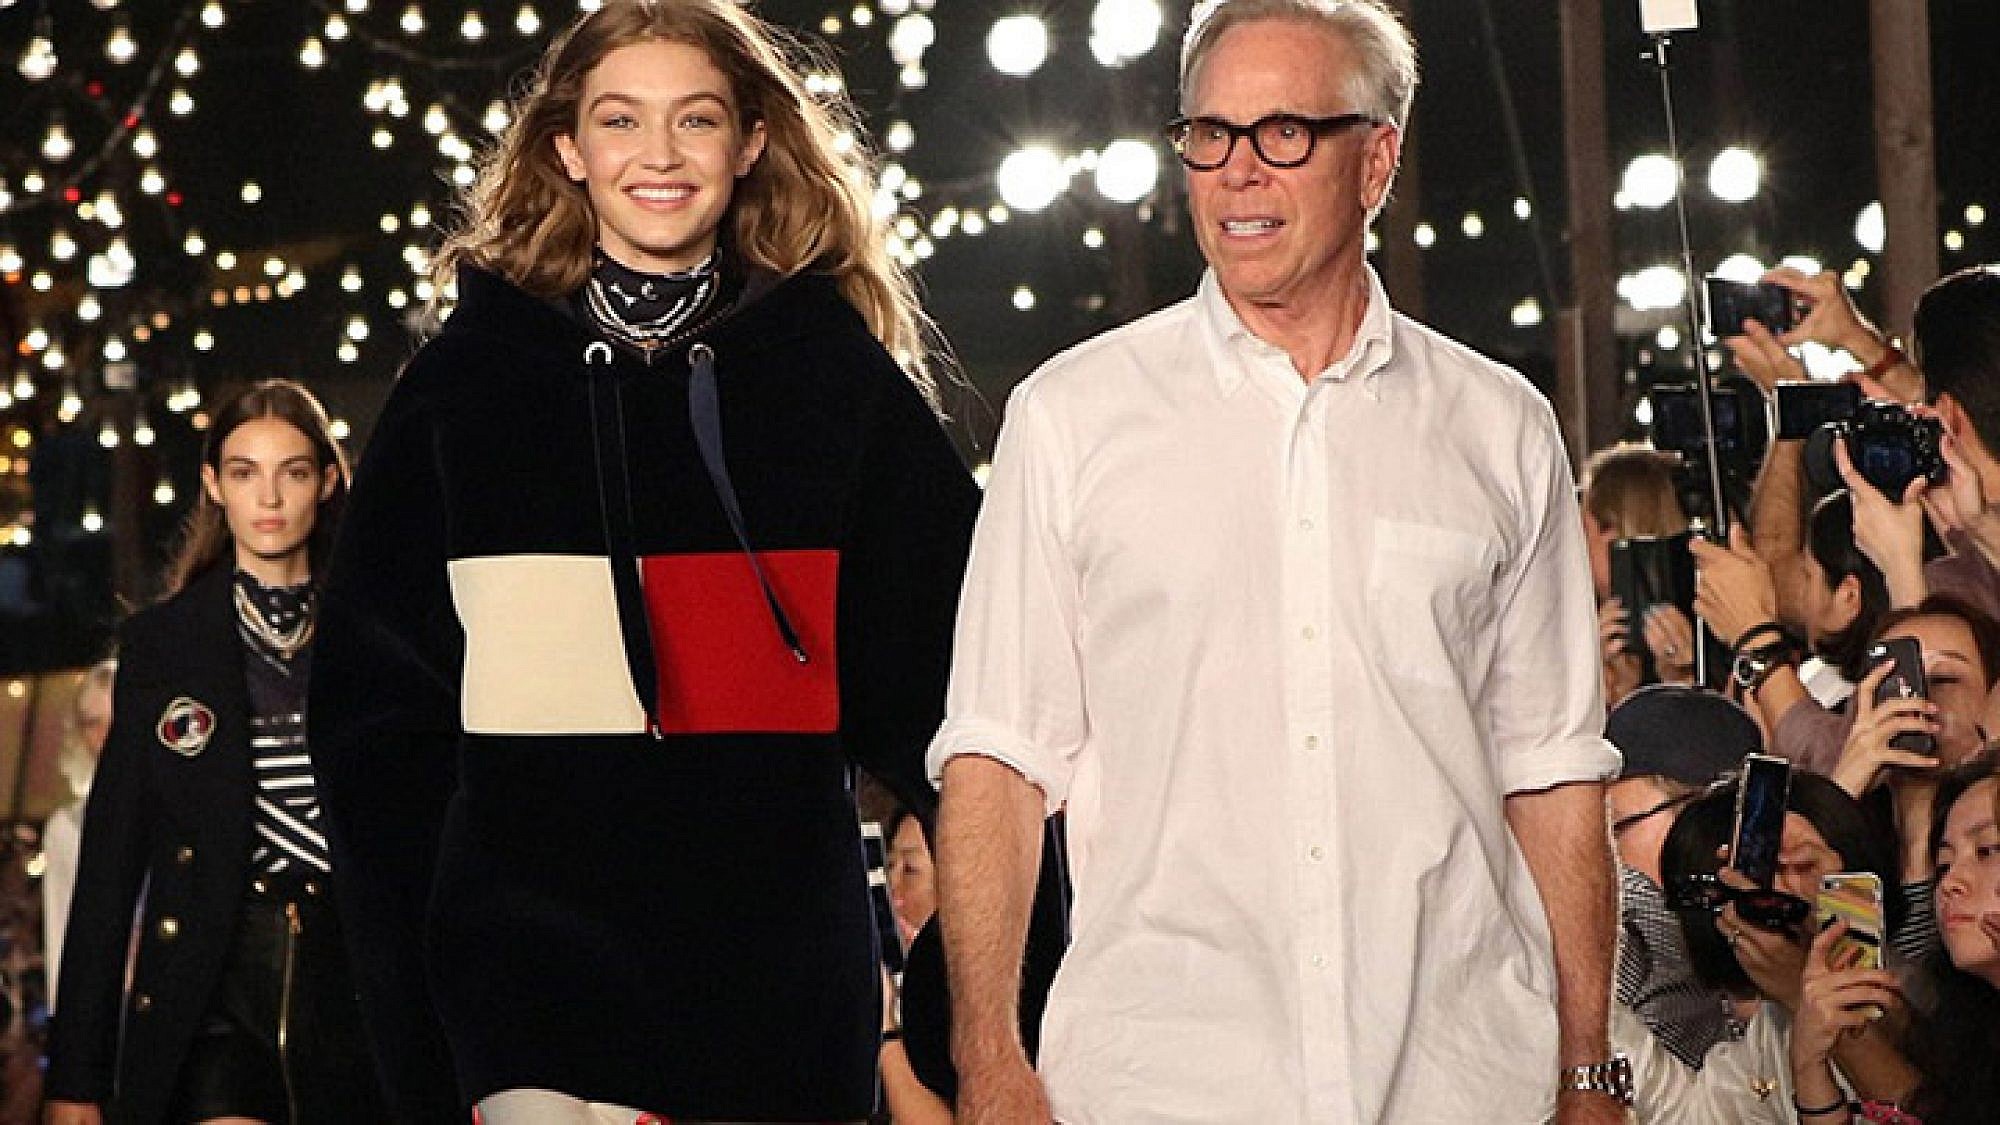 טומי הילפיגר עם ג'יג'י חדיד בסיום תצוגת האופנה בשבוע האופנה בניו יורק | צילום: יח"צ